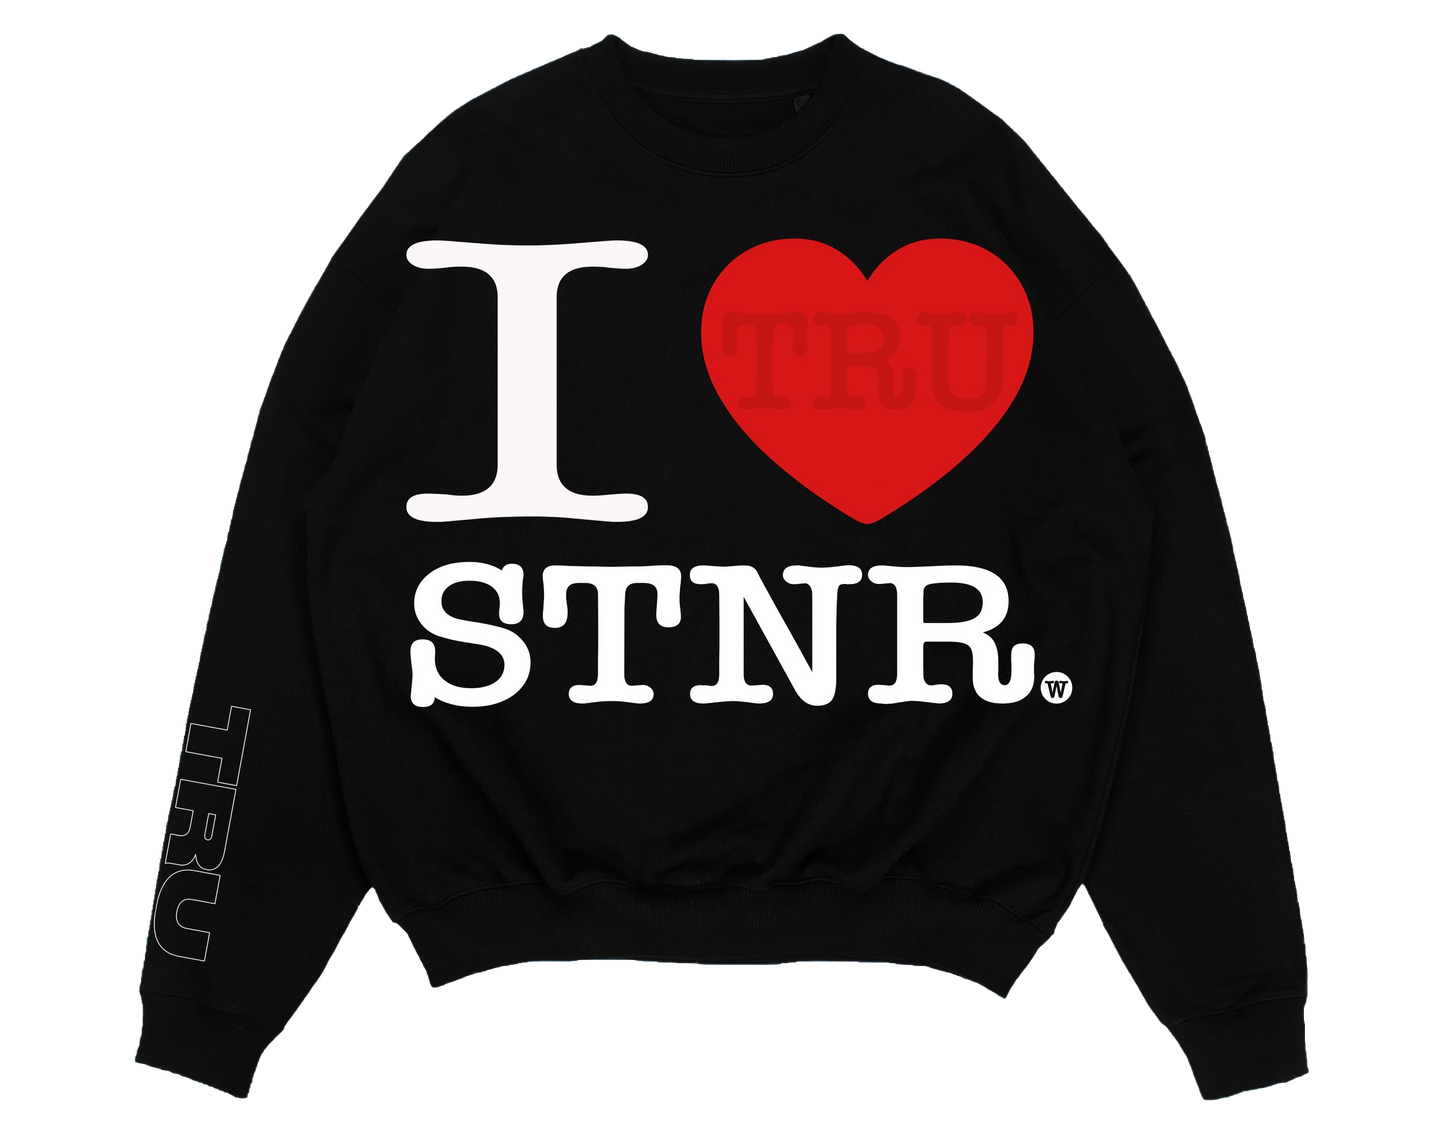 I LOVE STNR